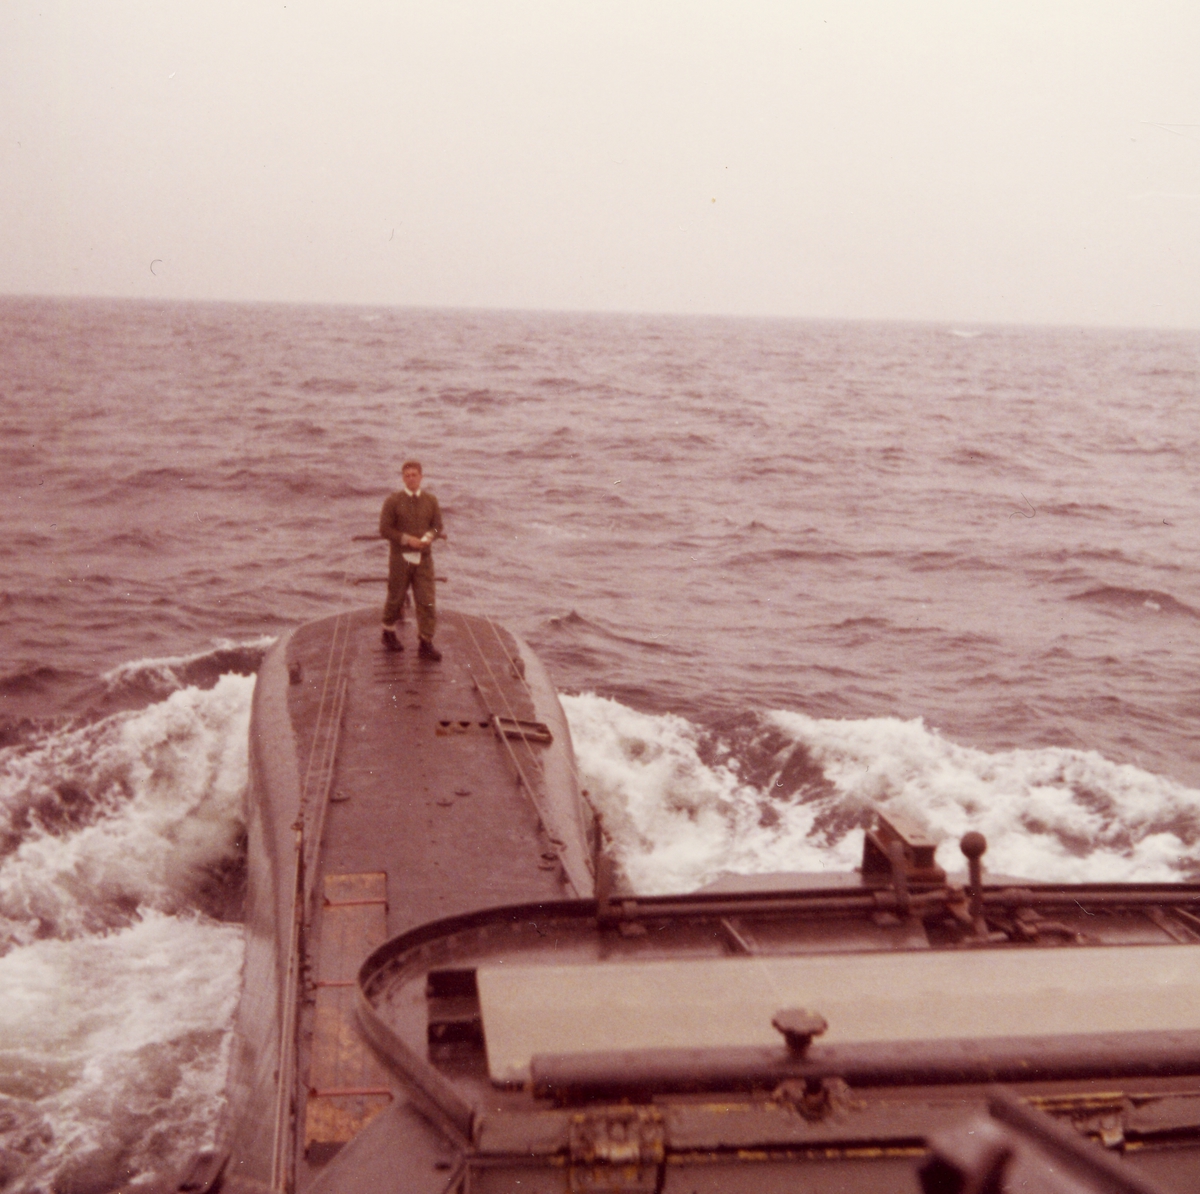 Foto tagen från tornet på U-båten Gäddan 1970. Lt Roger Sprimont på däck